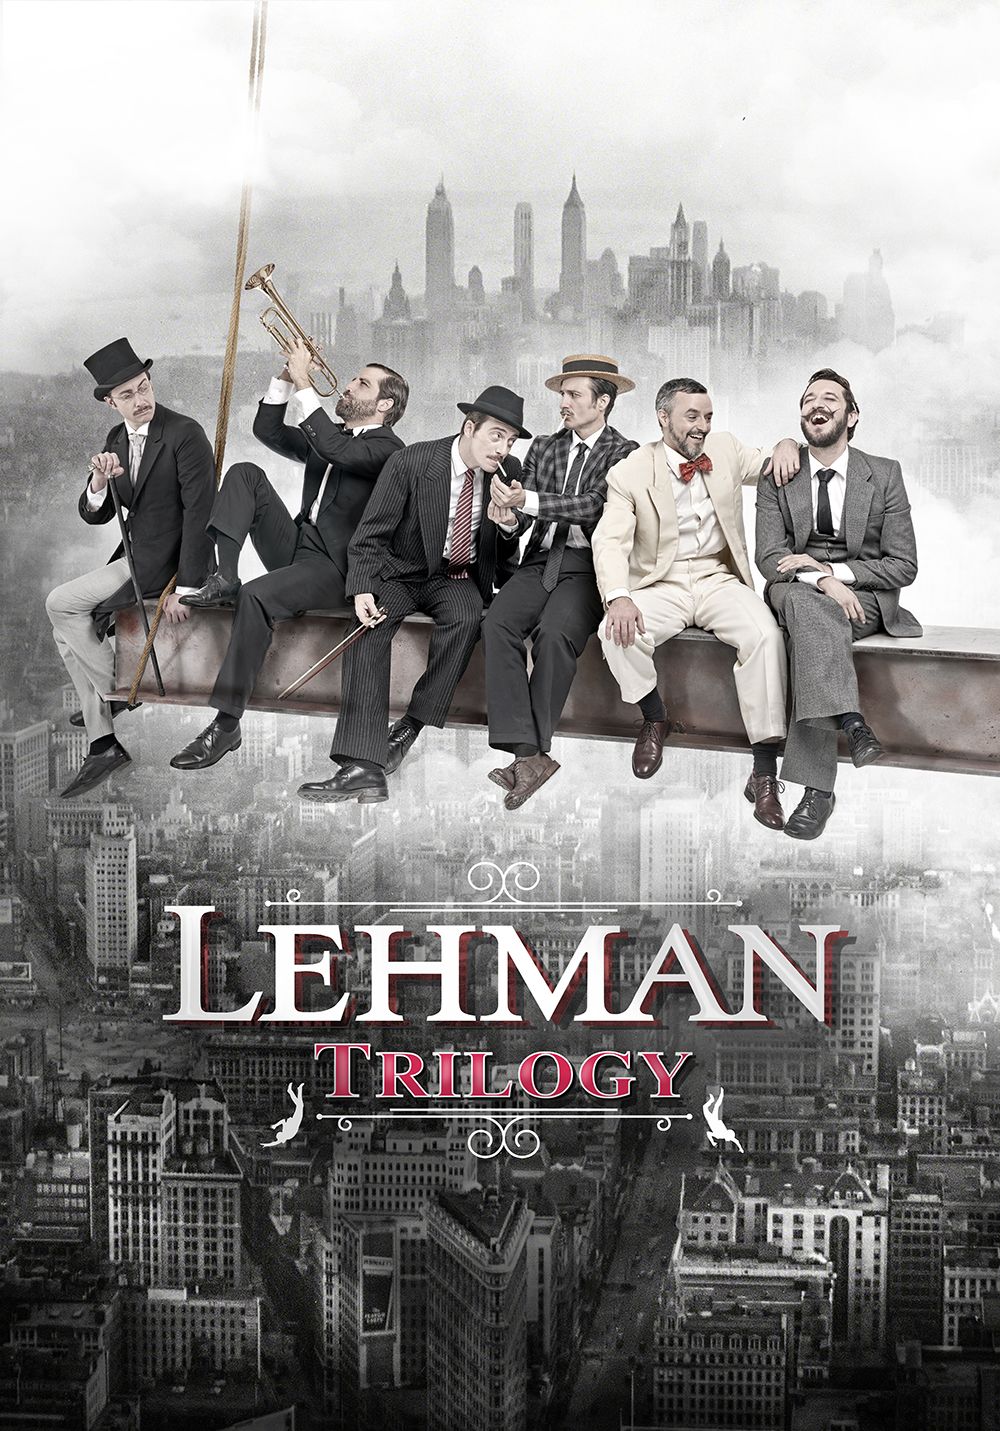 La quiebra de 'Lehman Brothers' llega a los Teatros del Canal reconvertida en un musical